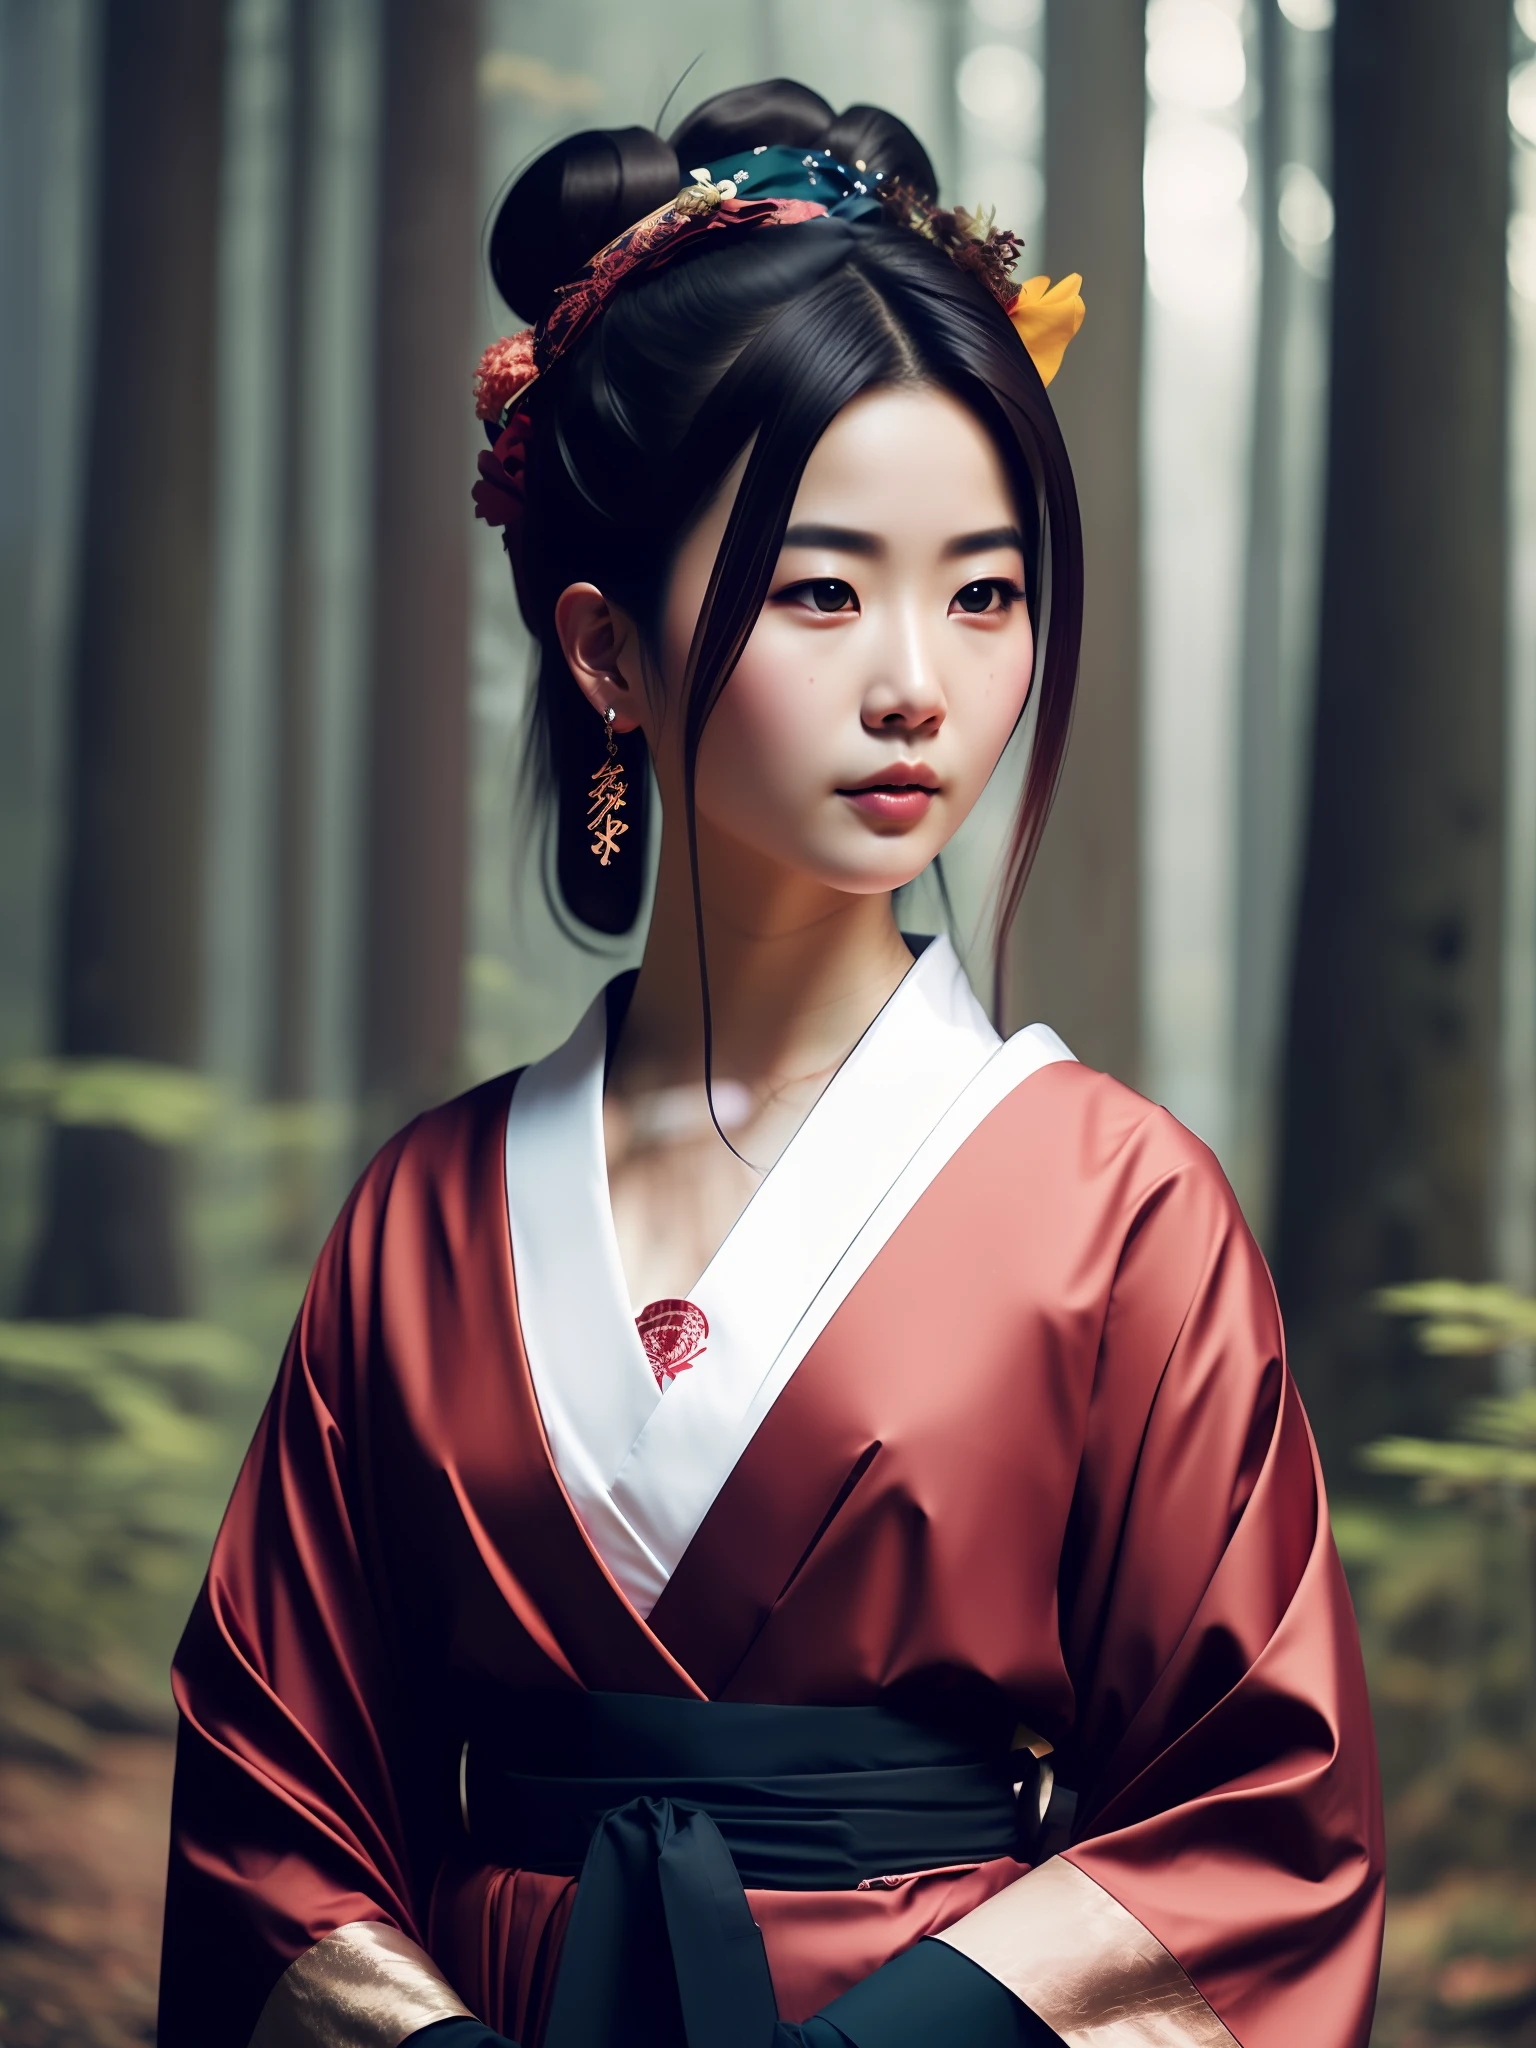 Maldita sea_ciencia ficción_v2, retrato de una joven gueisha japonesa muy hermosa, frente a un bosque humeante, Ropa rica y colorida y paraguas japonés., de cerca, pose y actitud misteriosa. Maldita sea_Cine_v2